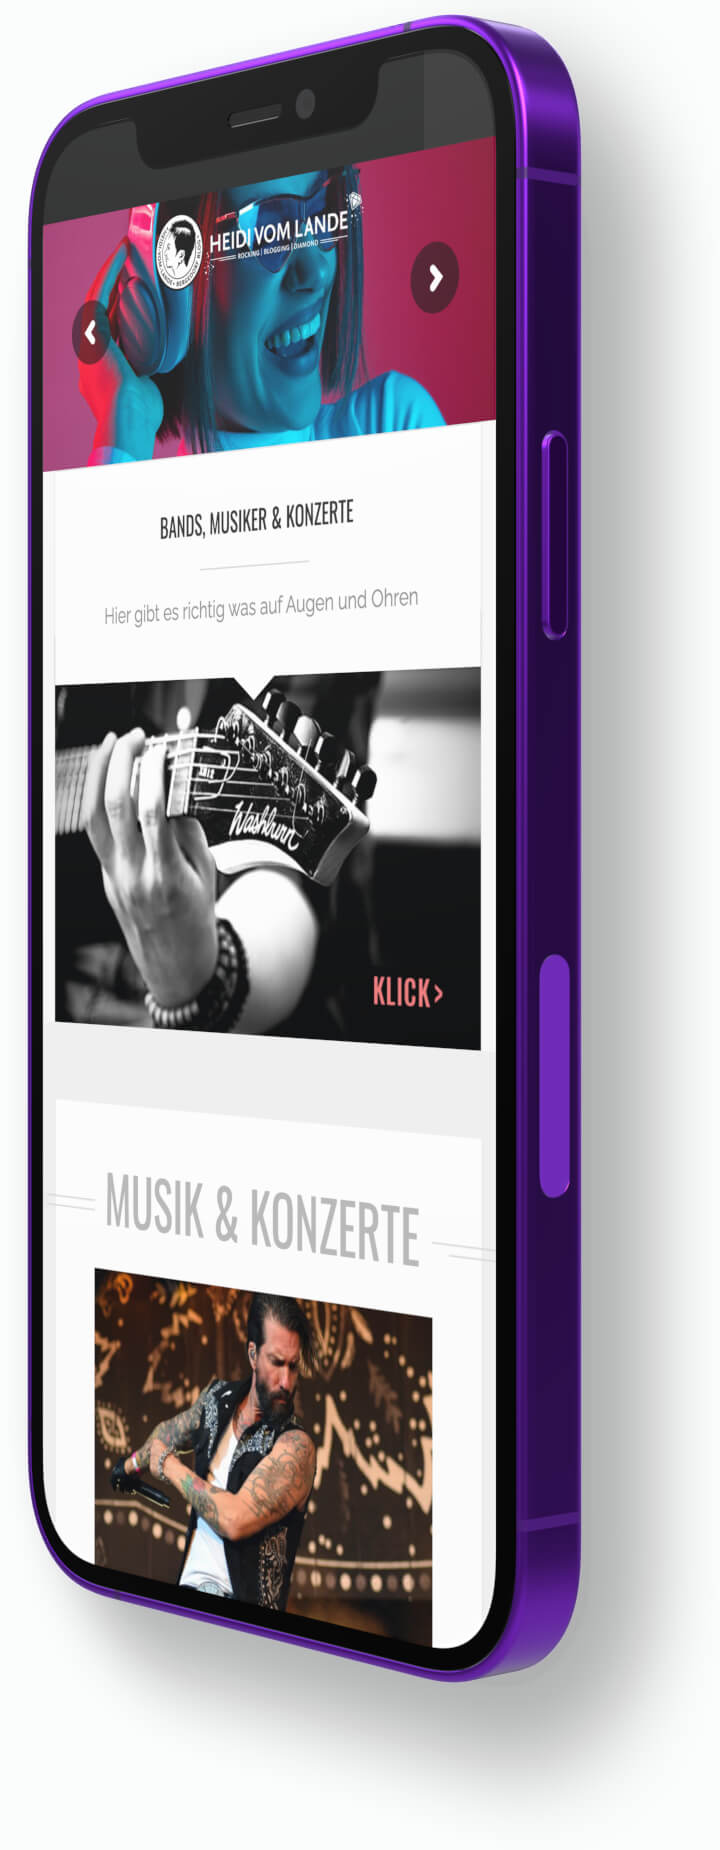 Gekipptes Smartphone mit Darstellung des Musikblogs HEIDI VOM LANDE